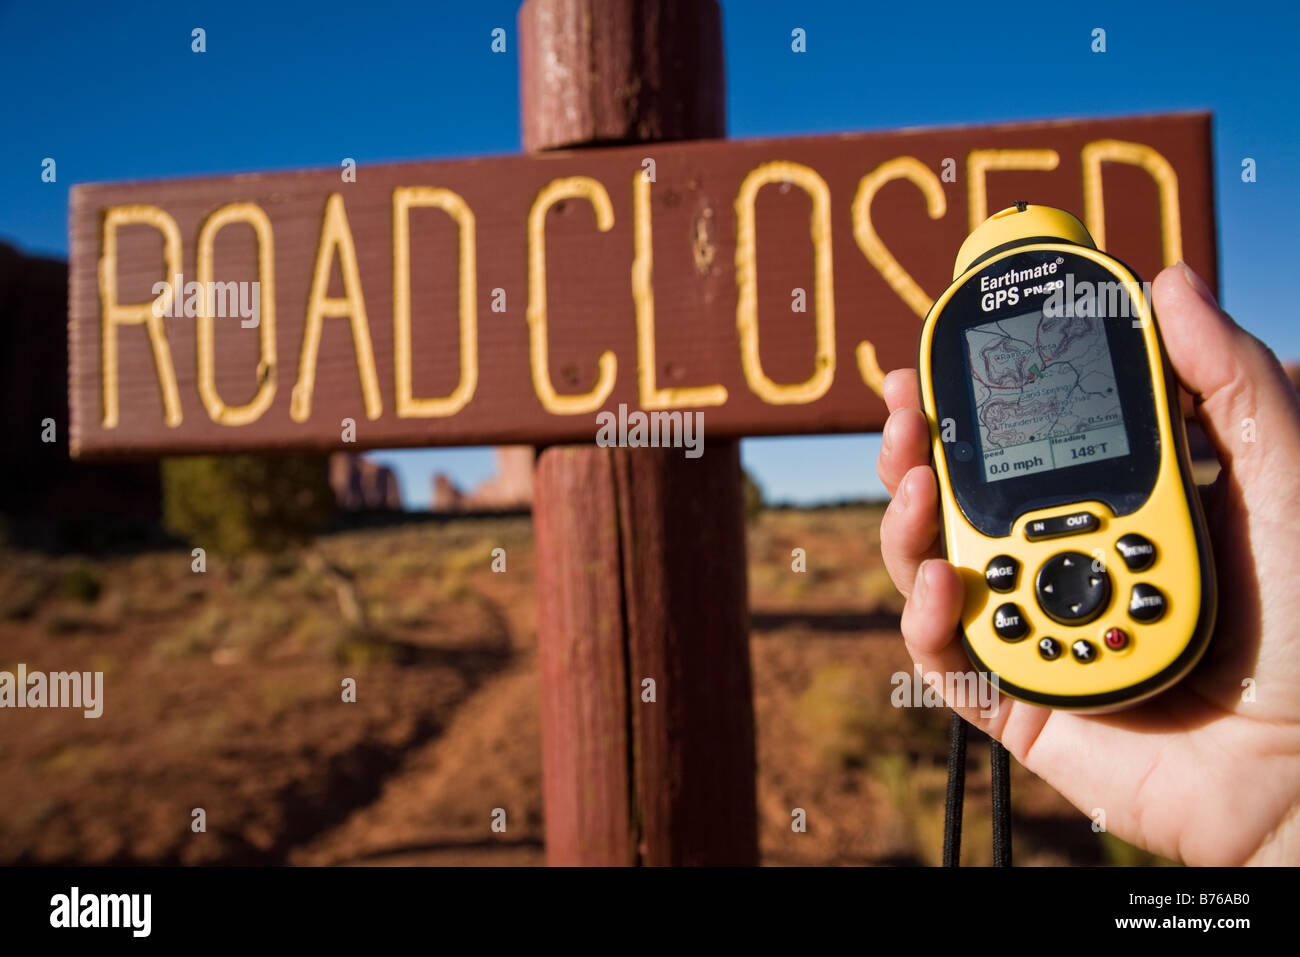 Globale Positioniereinheit Satelliten (GPS) statt einer mans Hand vor einem geschlossen Straßenschild, Monument Valley, Arizona, USA Stockfoto